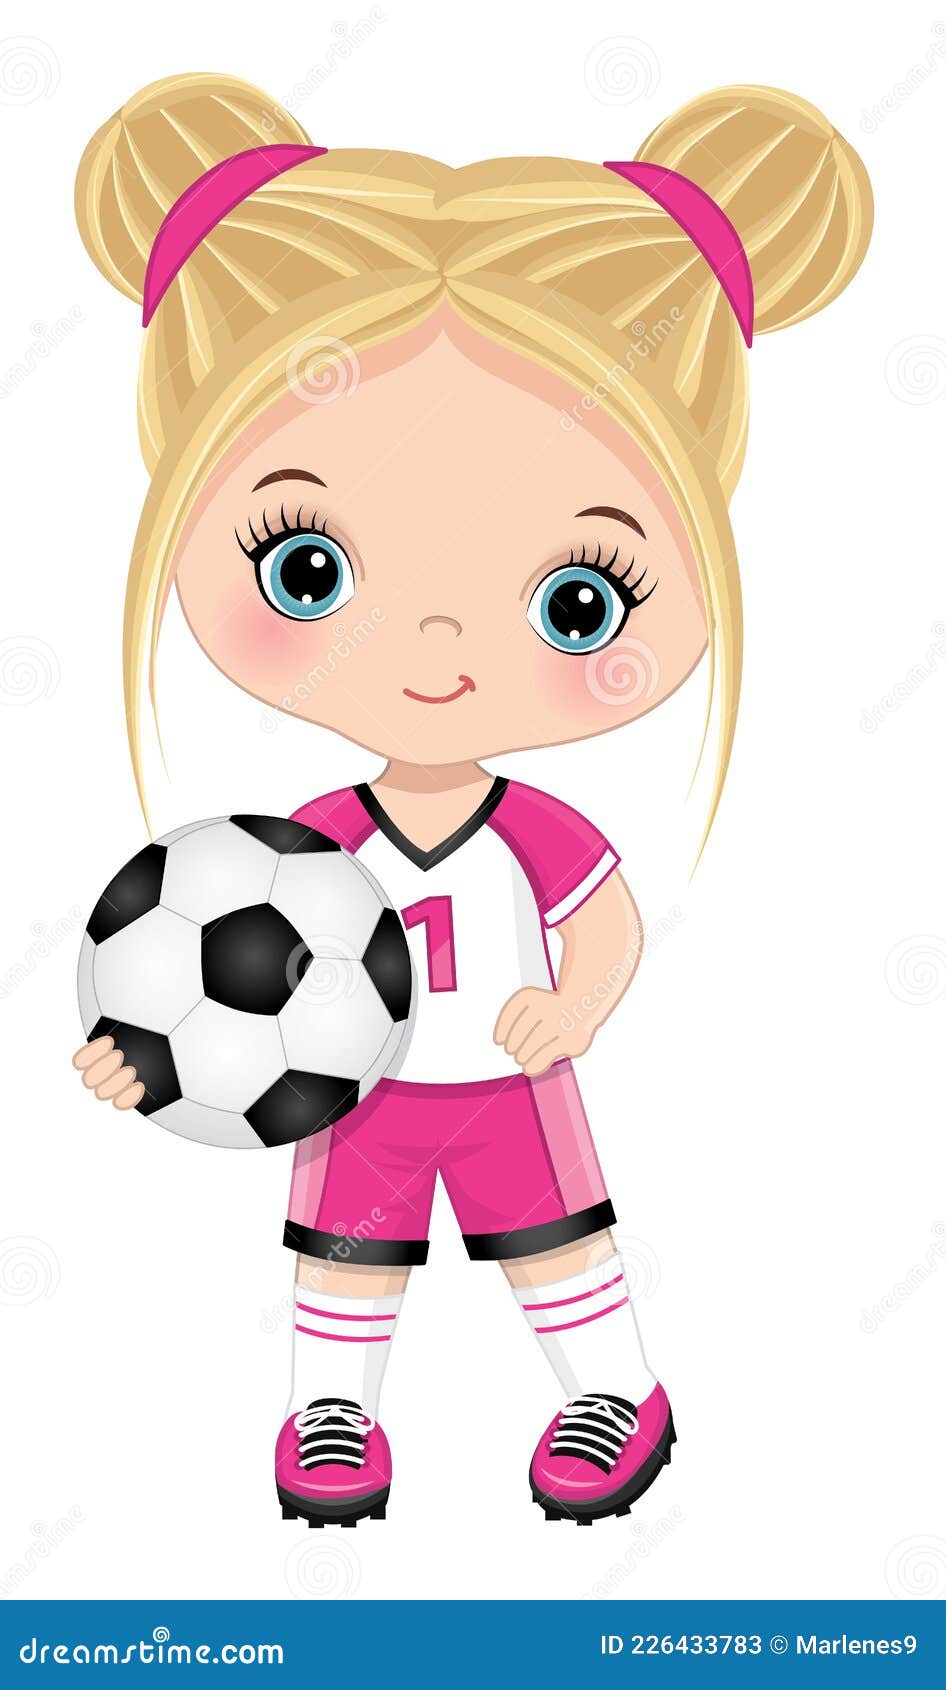 Resultado de imagem para garotas jogando futebol desenho